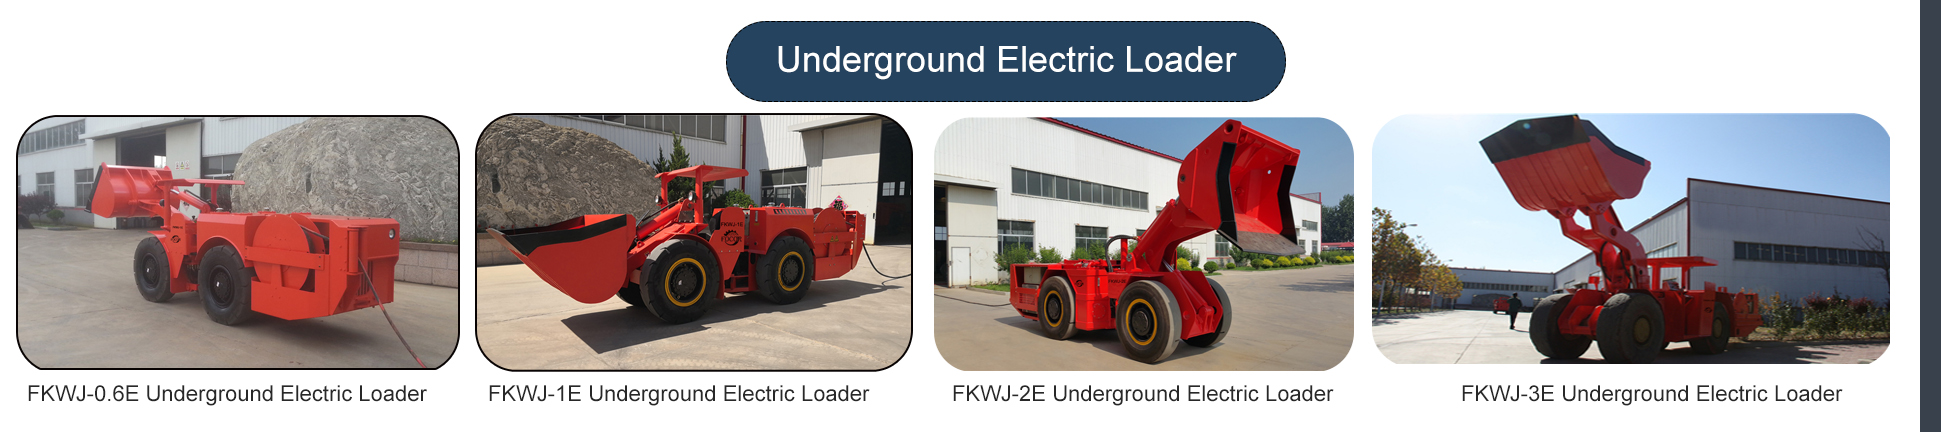 underground electric loader.jpg